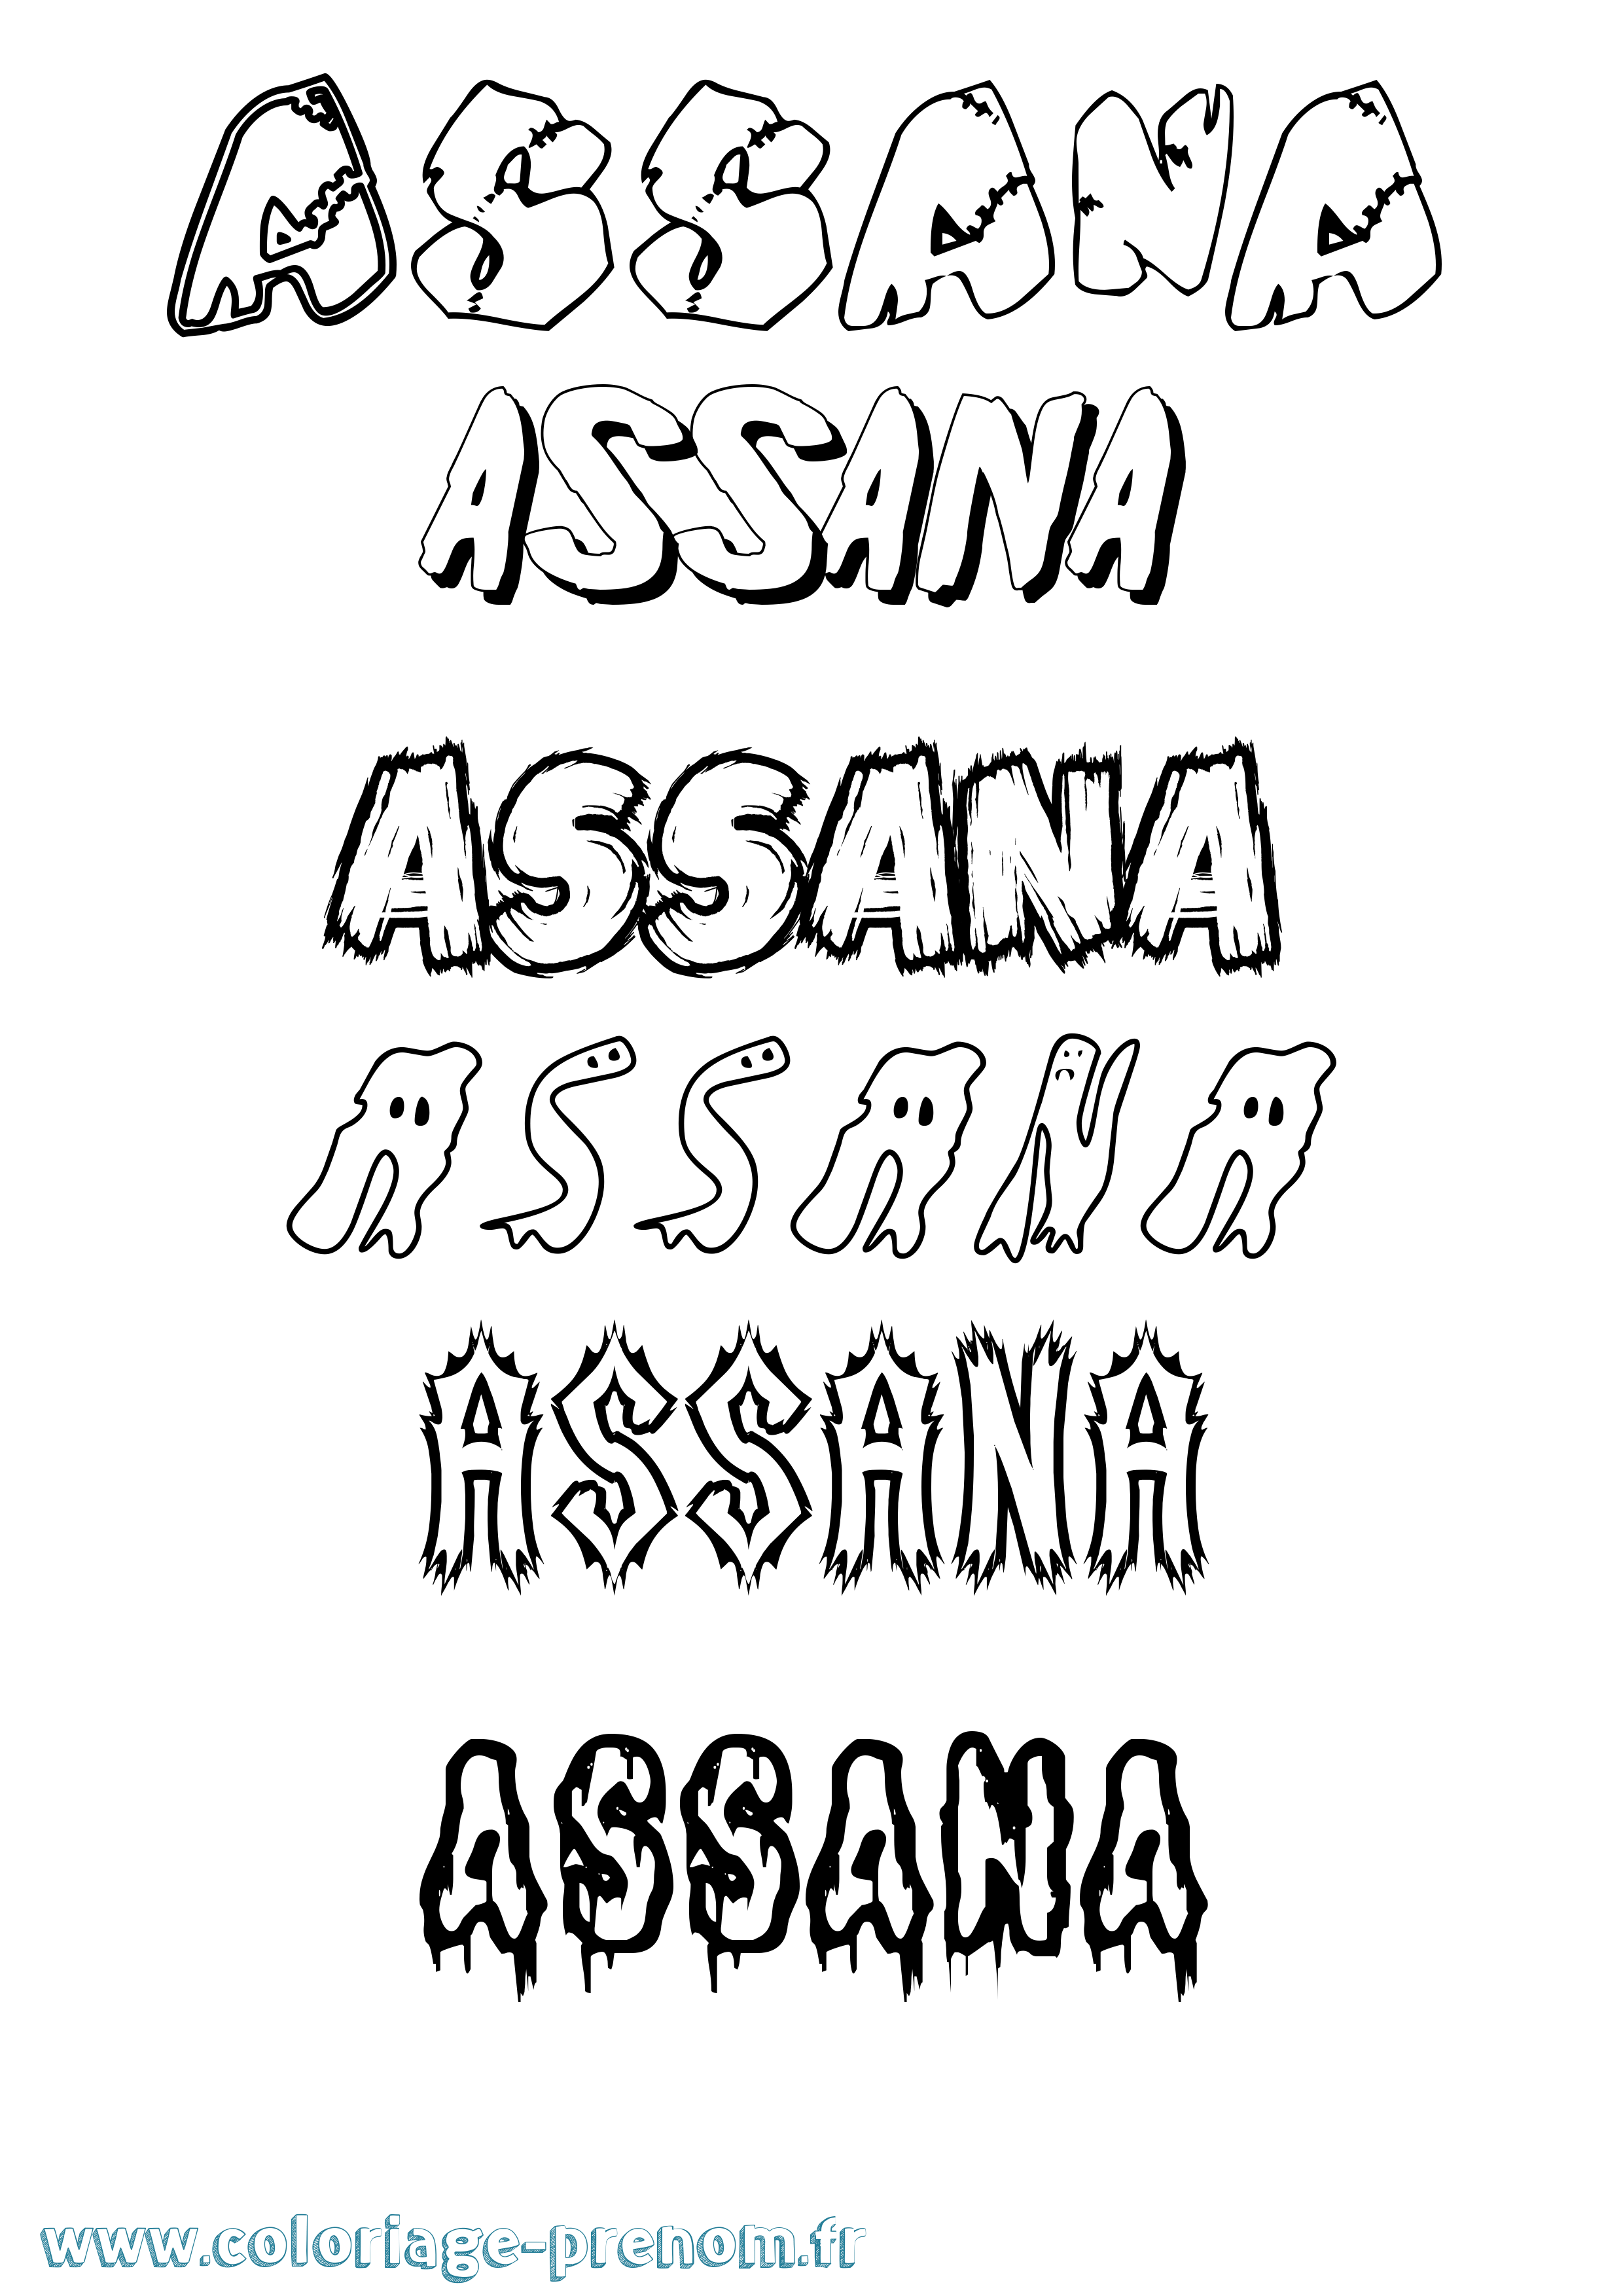 Coloriage prénom Assana Frisson